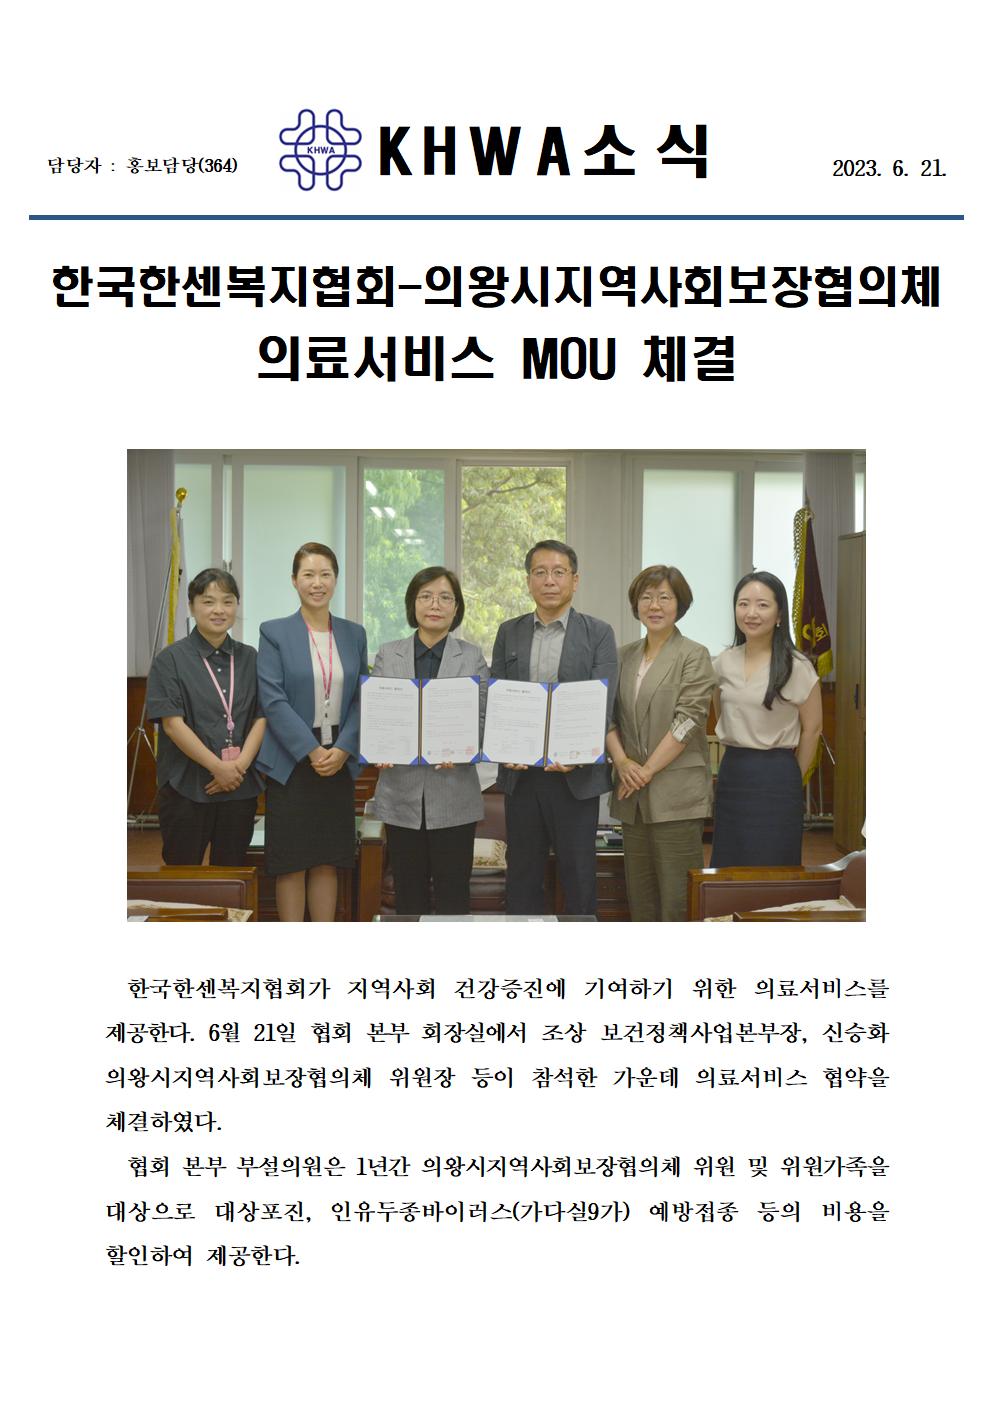 한국한센복지협회-의왕시지역사회보장협의체, 의료서비스 MOU 체결